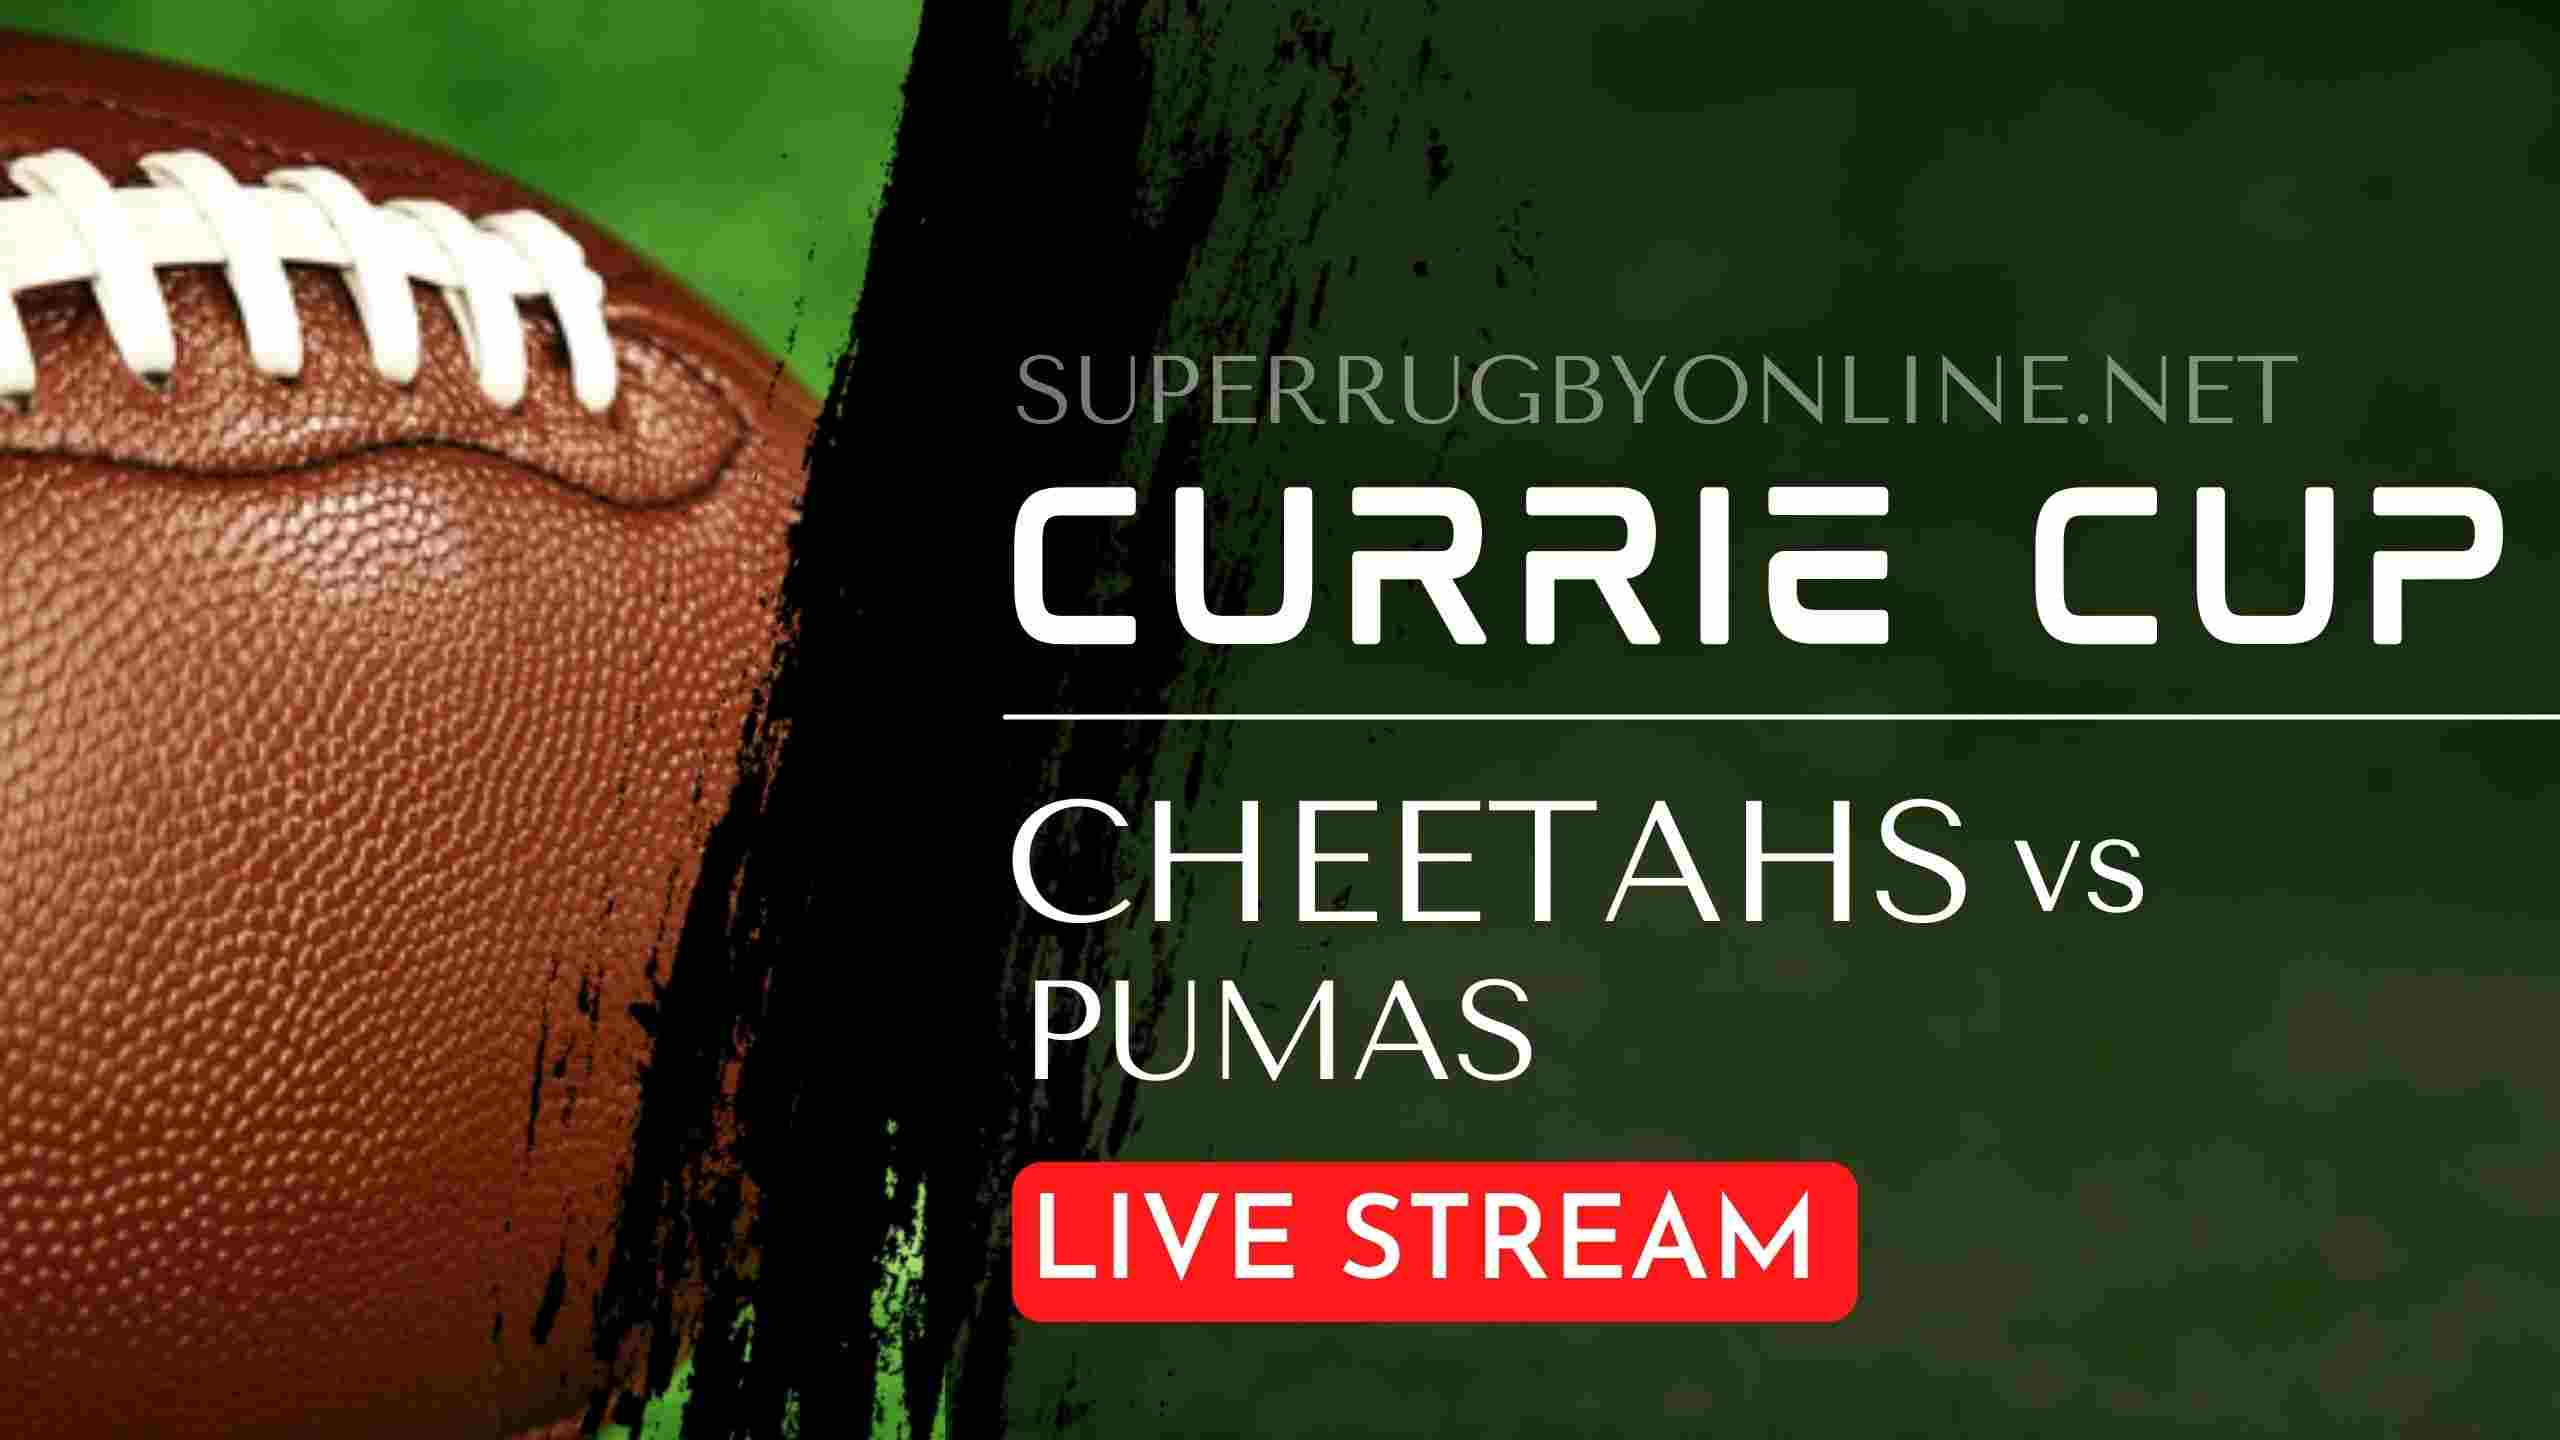 cheetahs-vs-pumas-currie-cup-live-stream